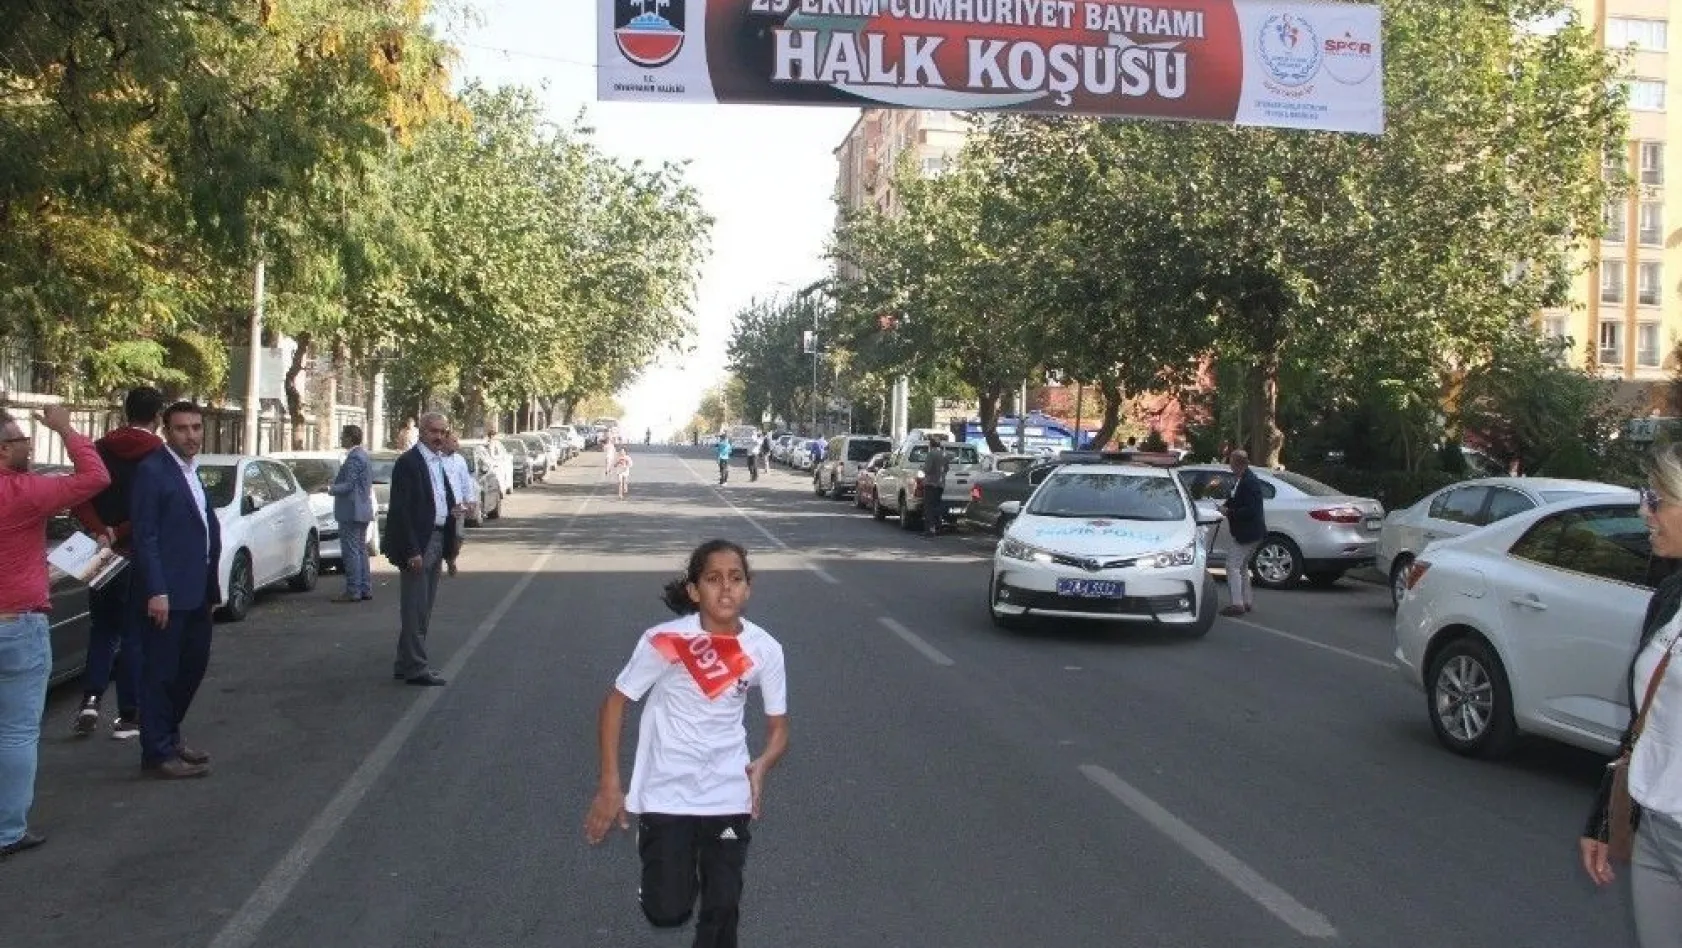 Diyarbakır'da 29 Ekim Cumhuriyet Bayramı etkinlikleri
